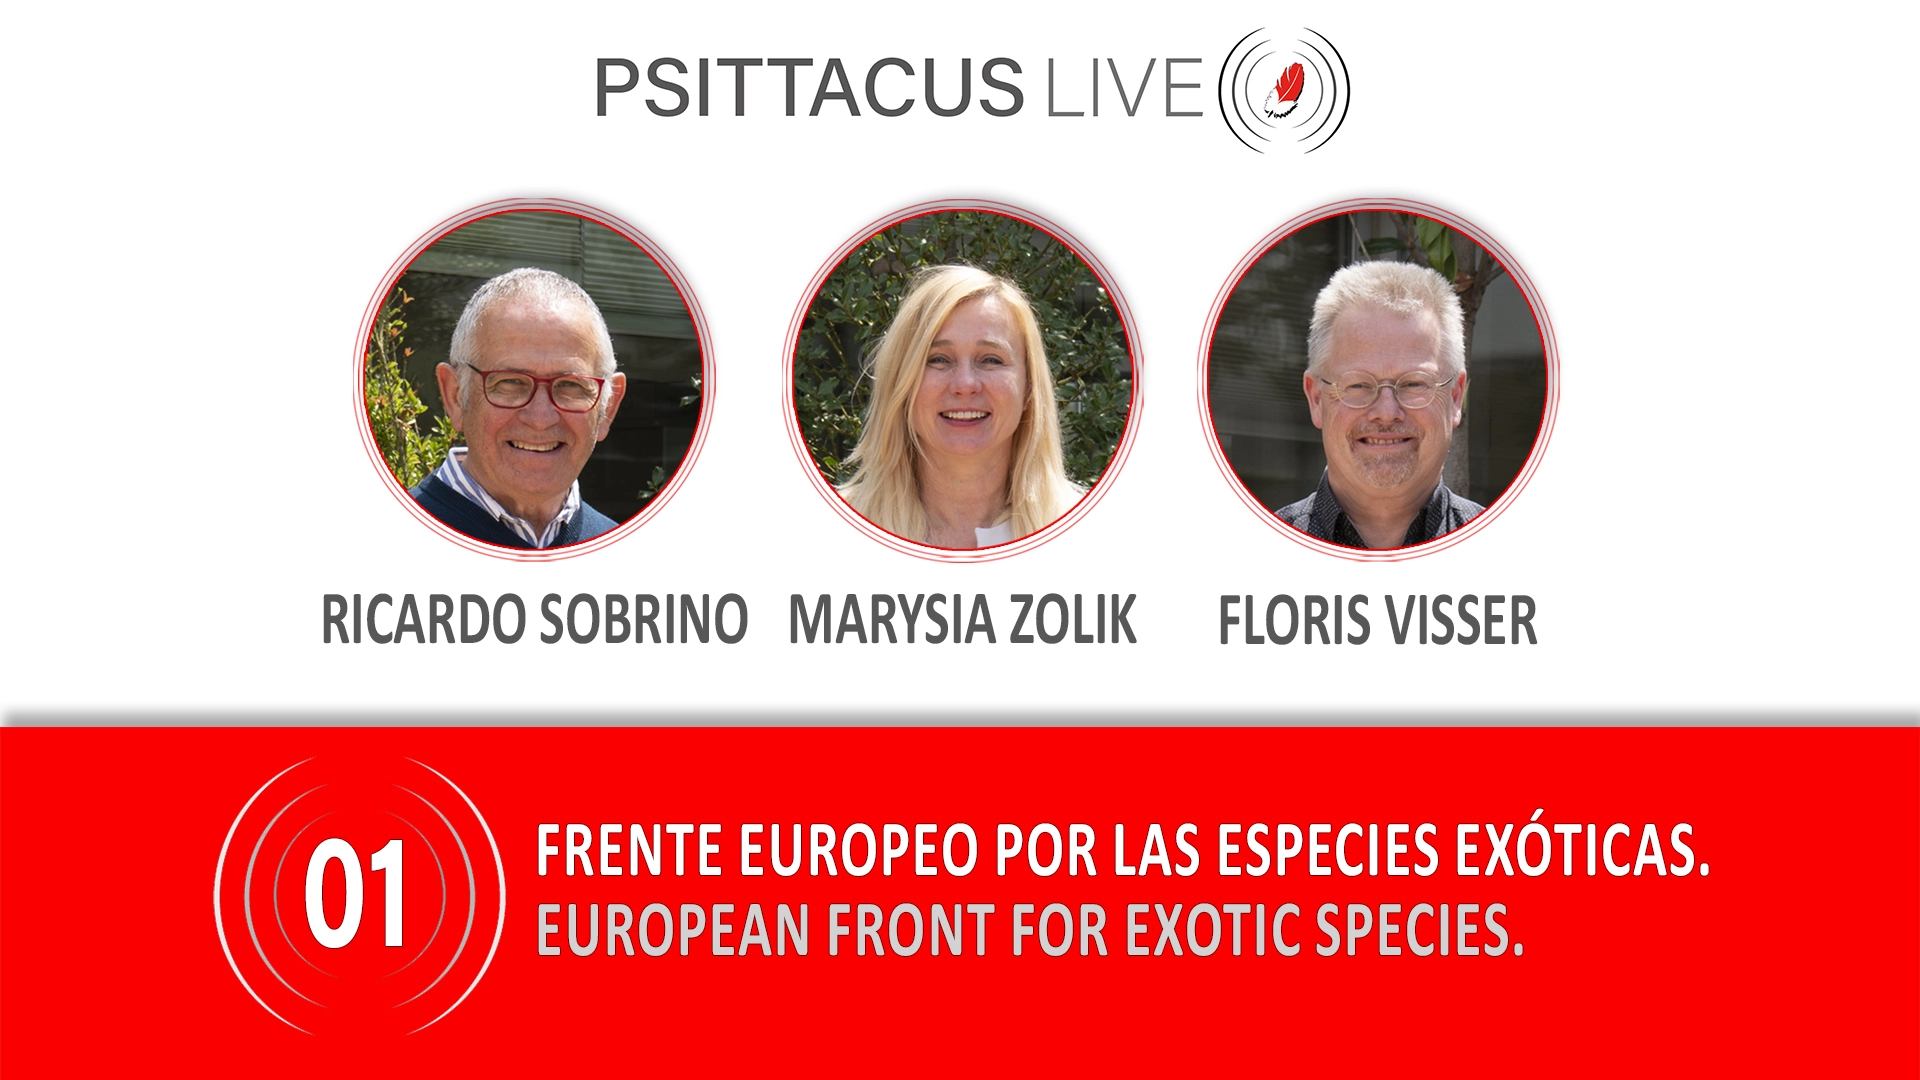 La Fundació Psittacus activa PSITTACUS LIVE